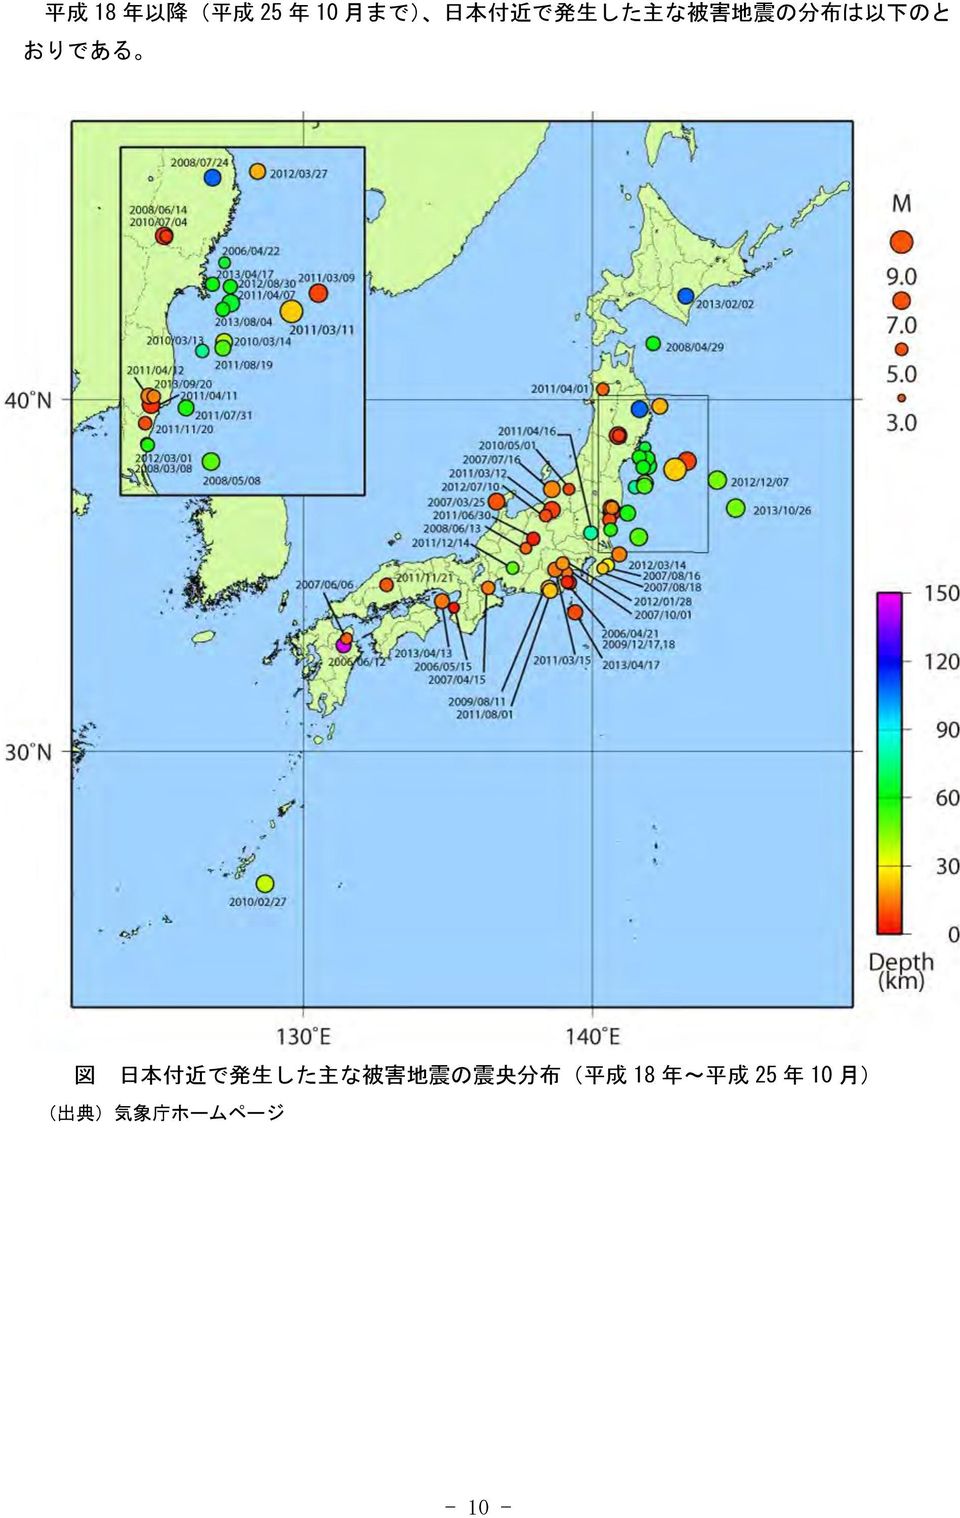 付 近 で 発 生 した 主 な 被 害 地 震 の 震 央 分 布 ( 平 成 18